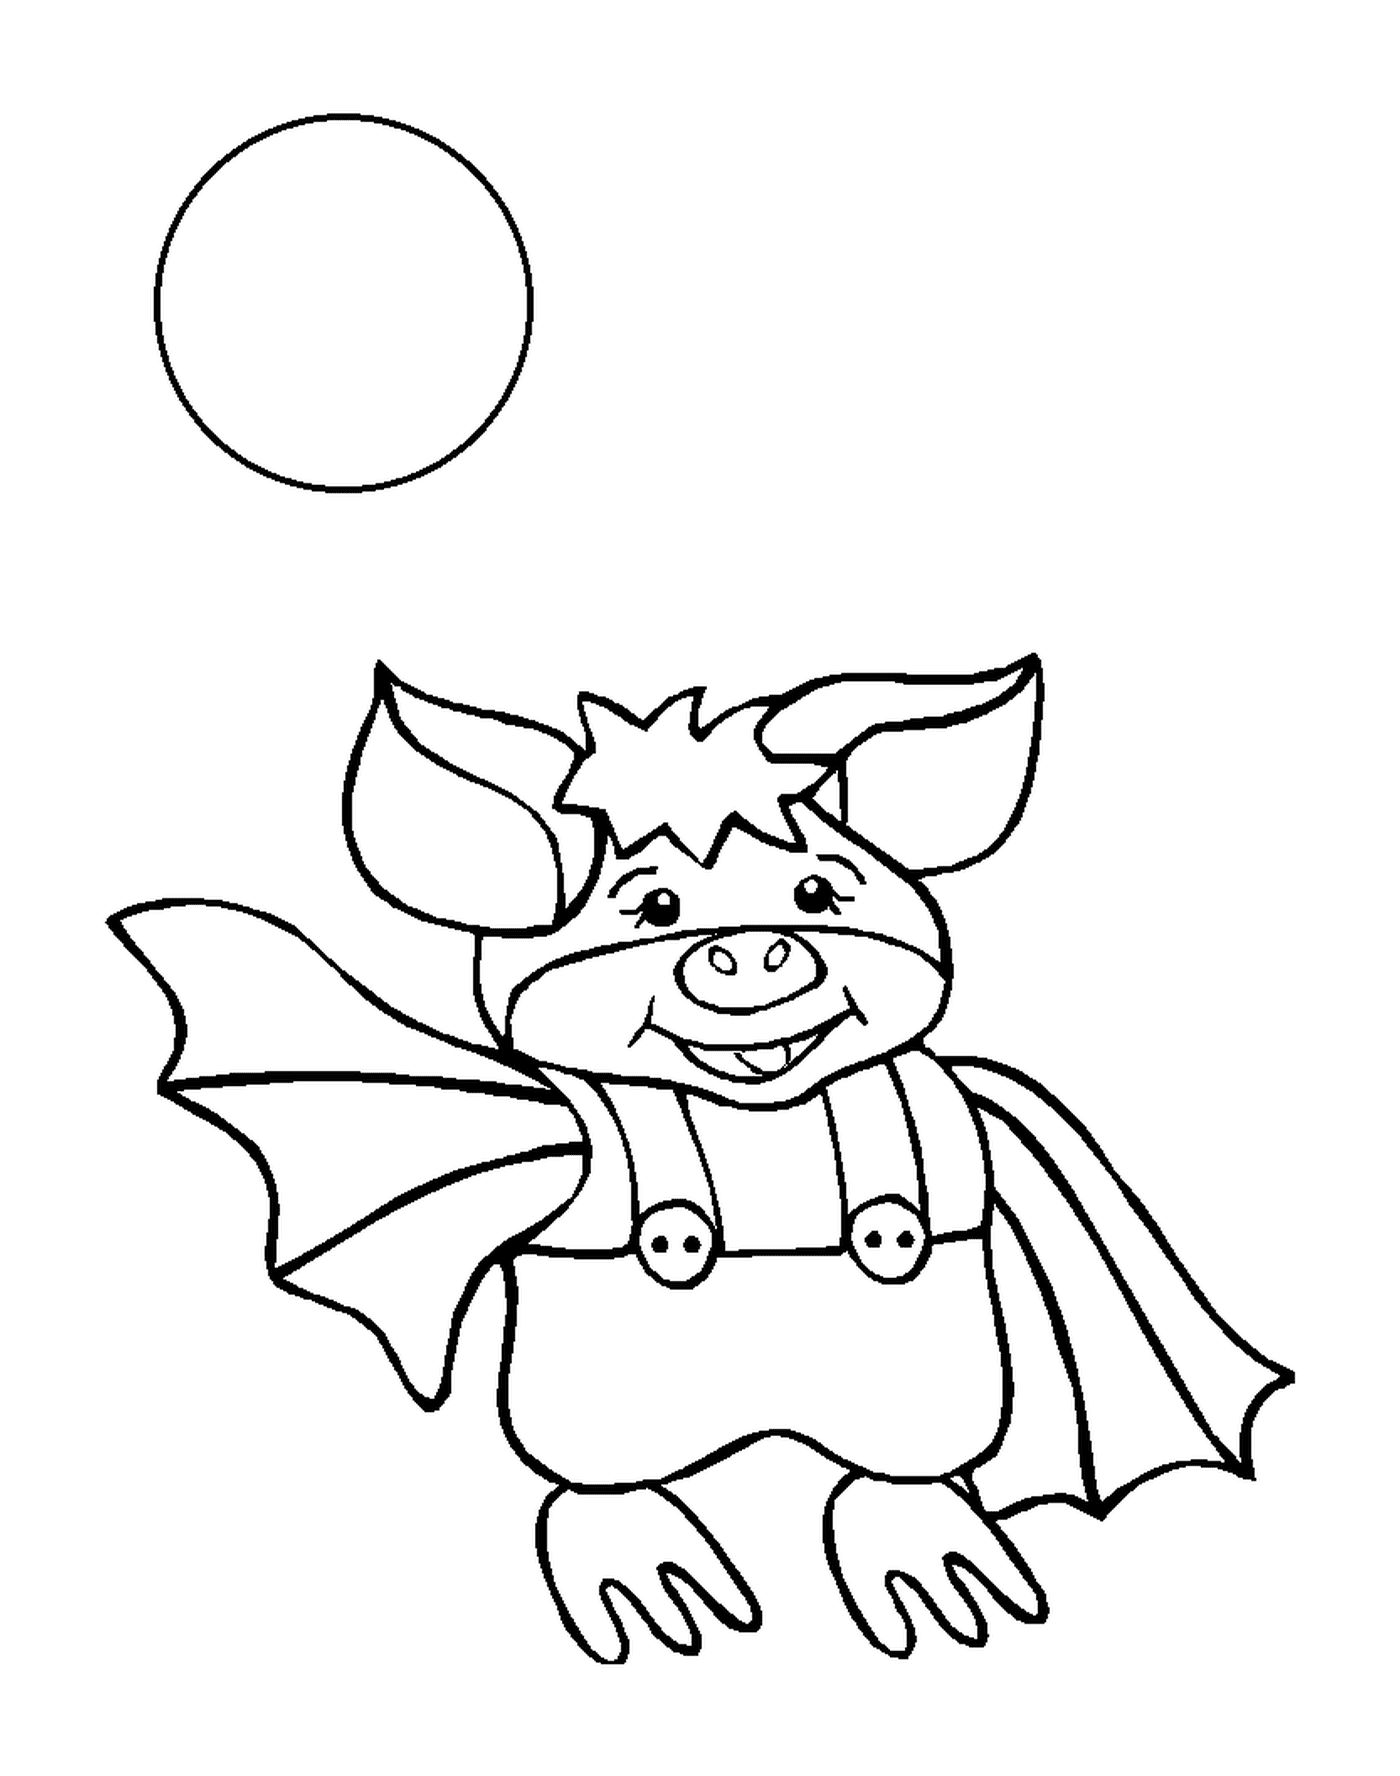  cerdo disfrazado de murciélago 